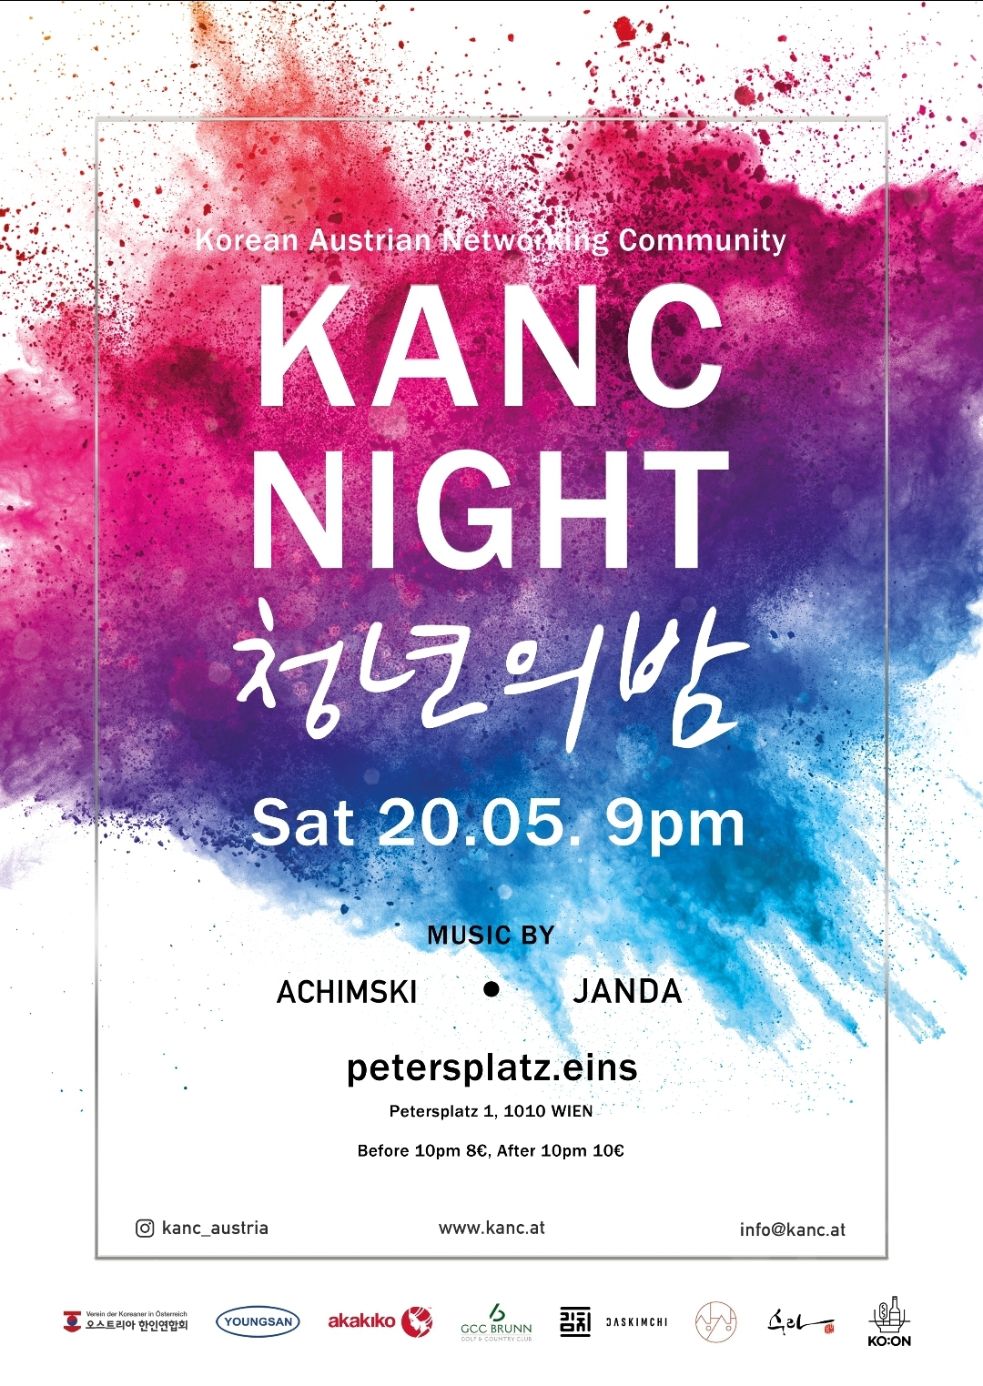 KANC NIGHT am 20. May 2023 @ petersplatz.eins.